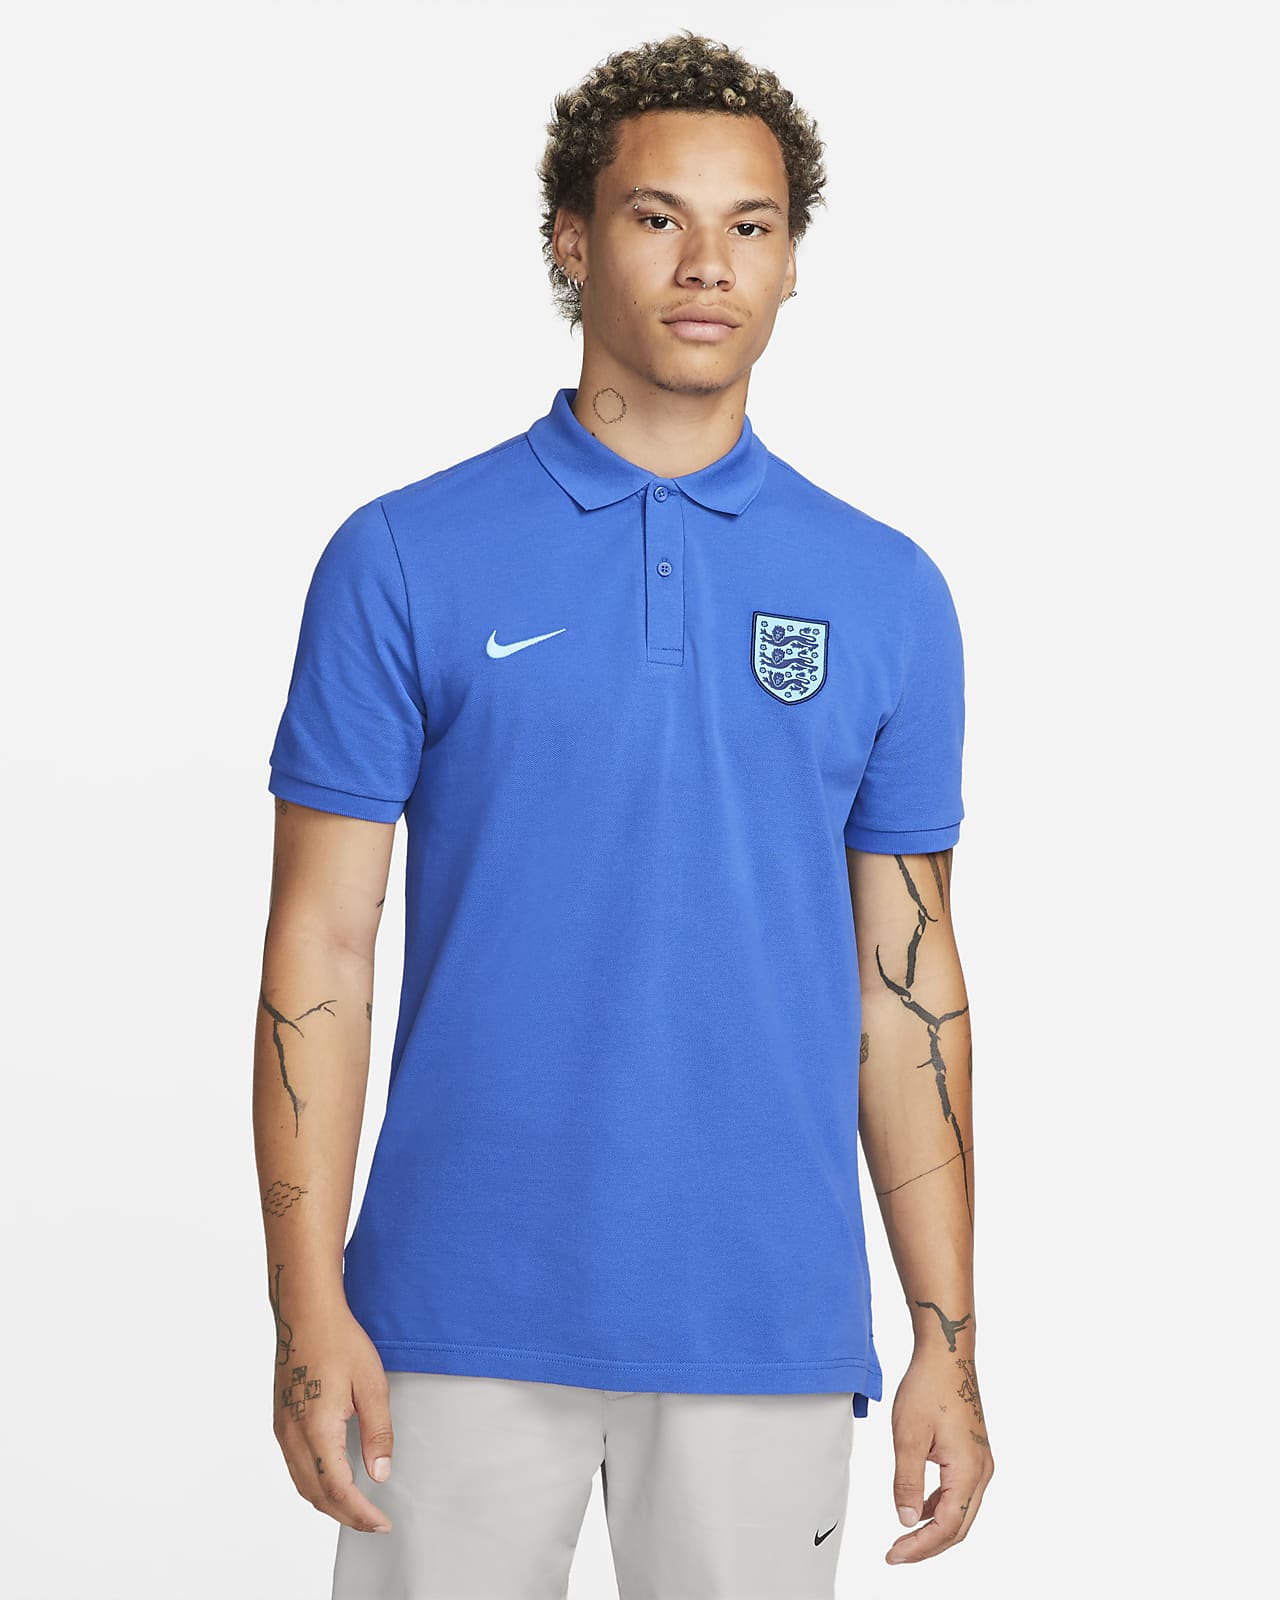 motor astronomía oler Polo de fútbol para hombre de Inglaterra. Nike.com